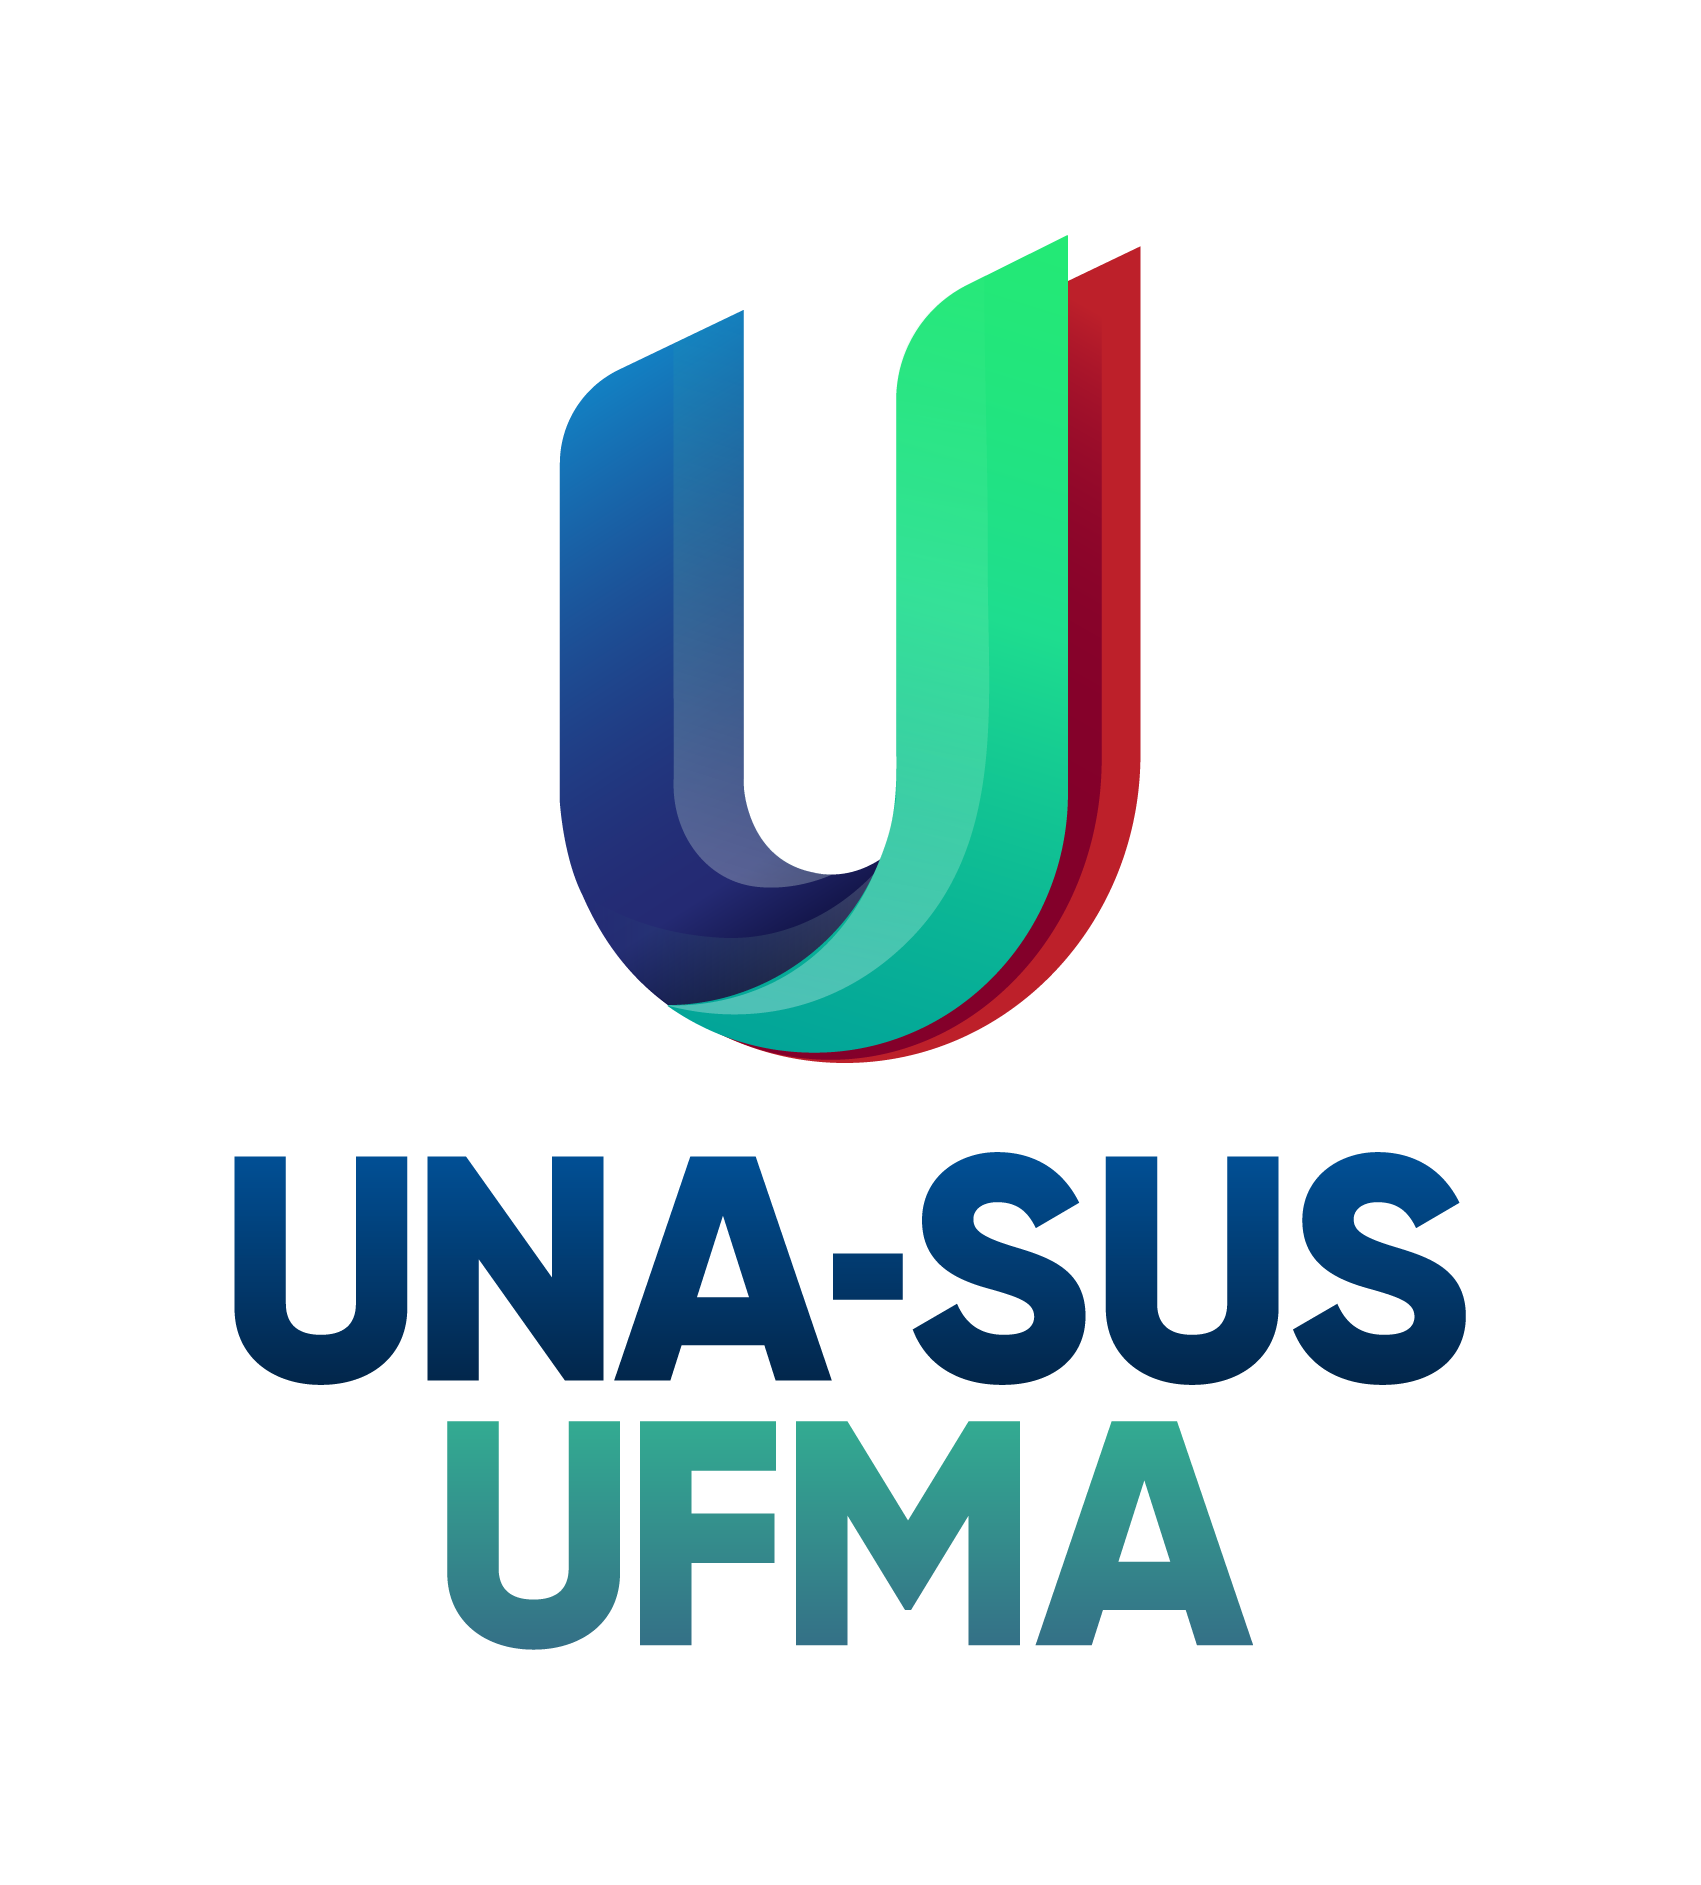 PORTAL UNA-SUS/UFMA